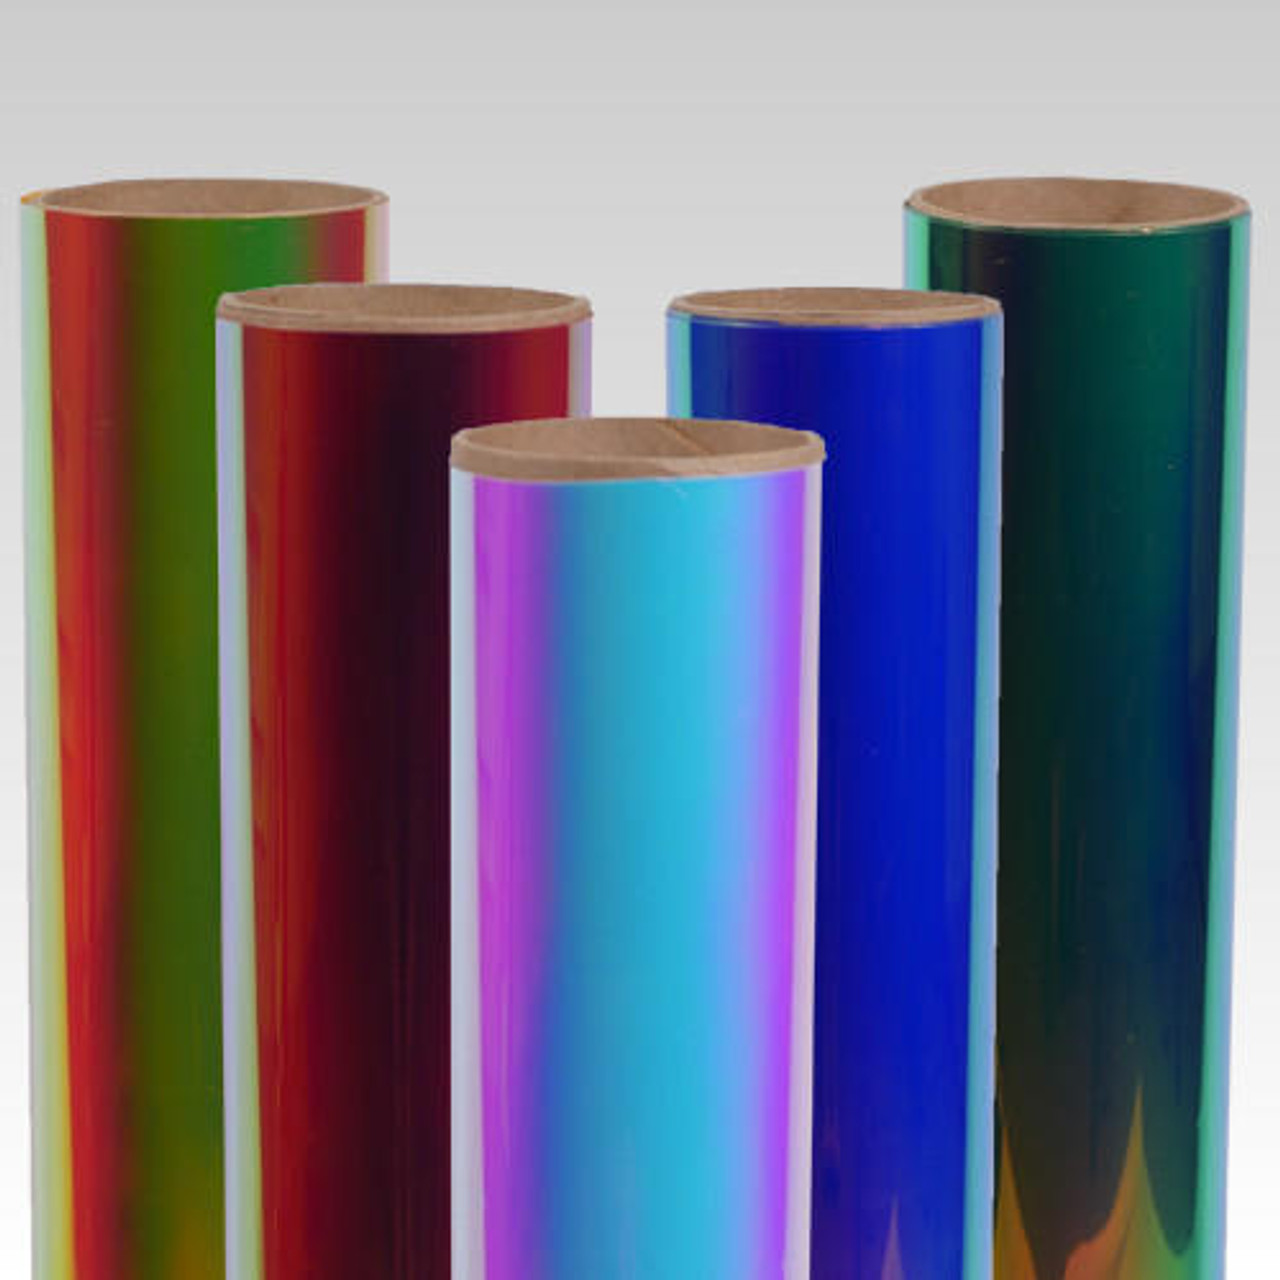 Siser Glitter Heat Transfer Vinyl (HTV) 20 x 150 ft Roll - 45 Colors Available, Light Green